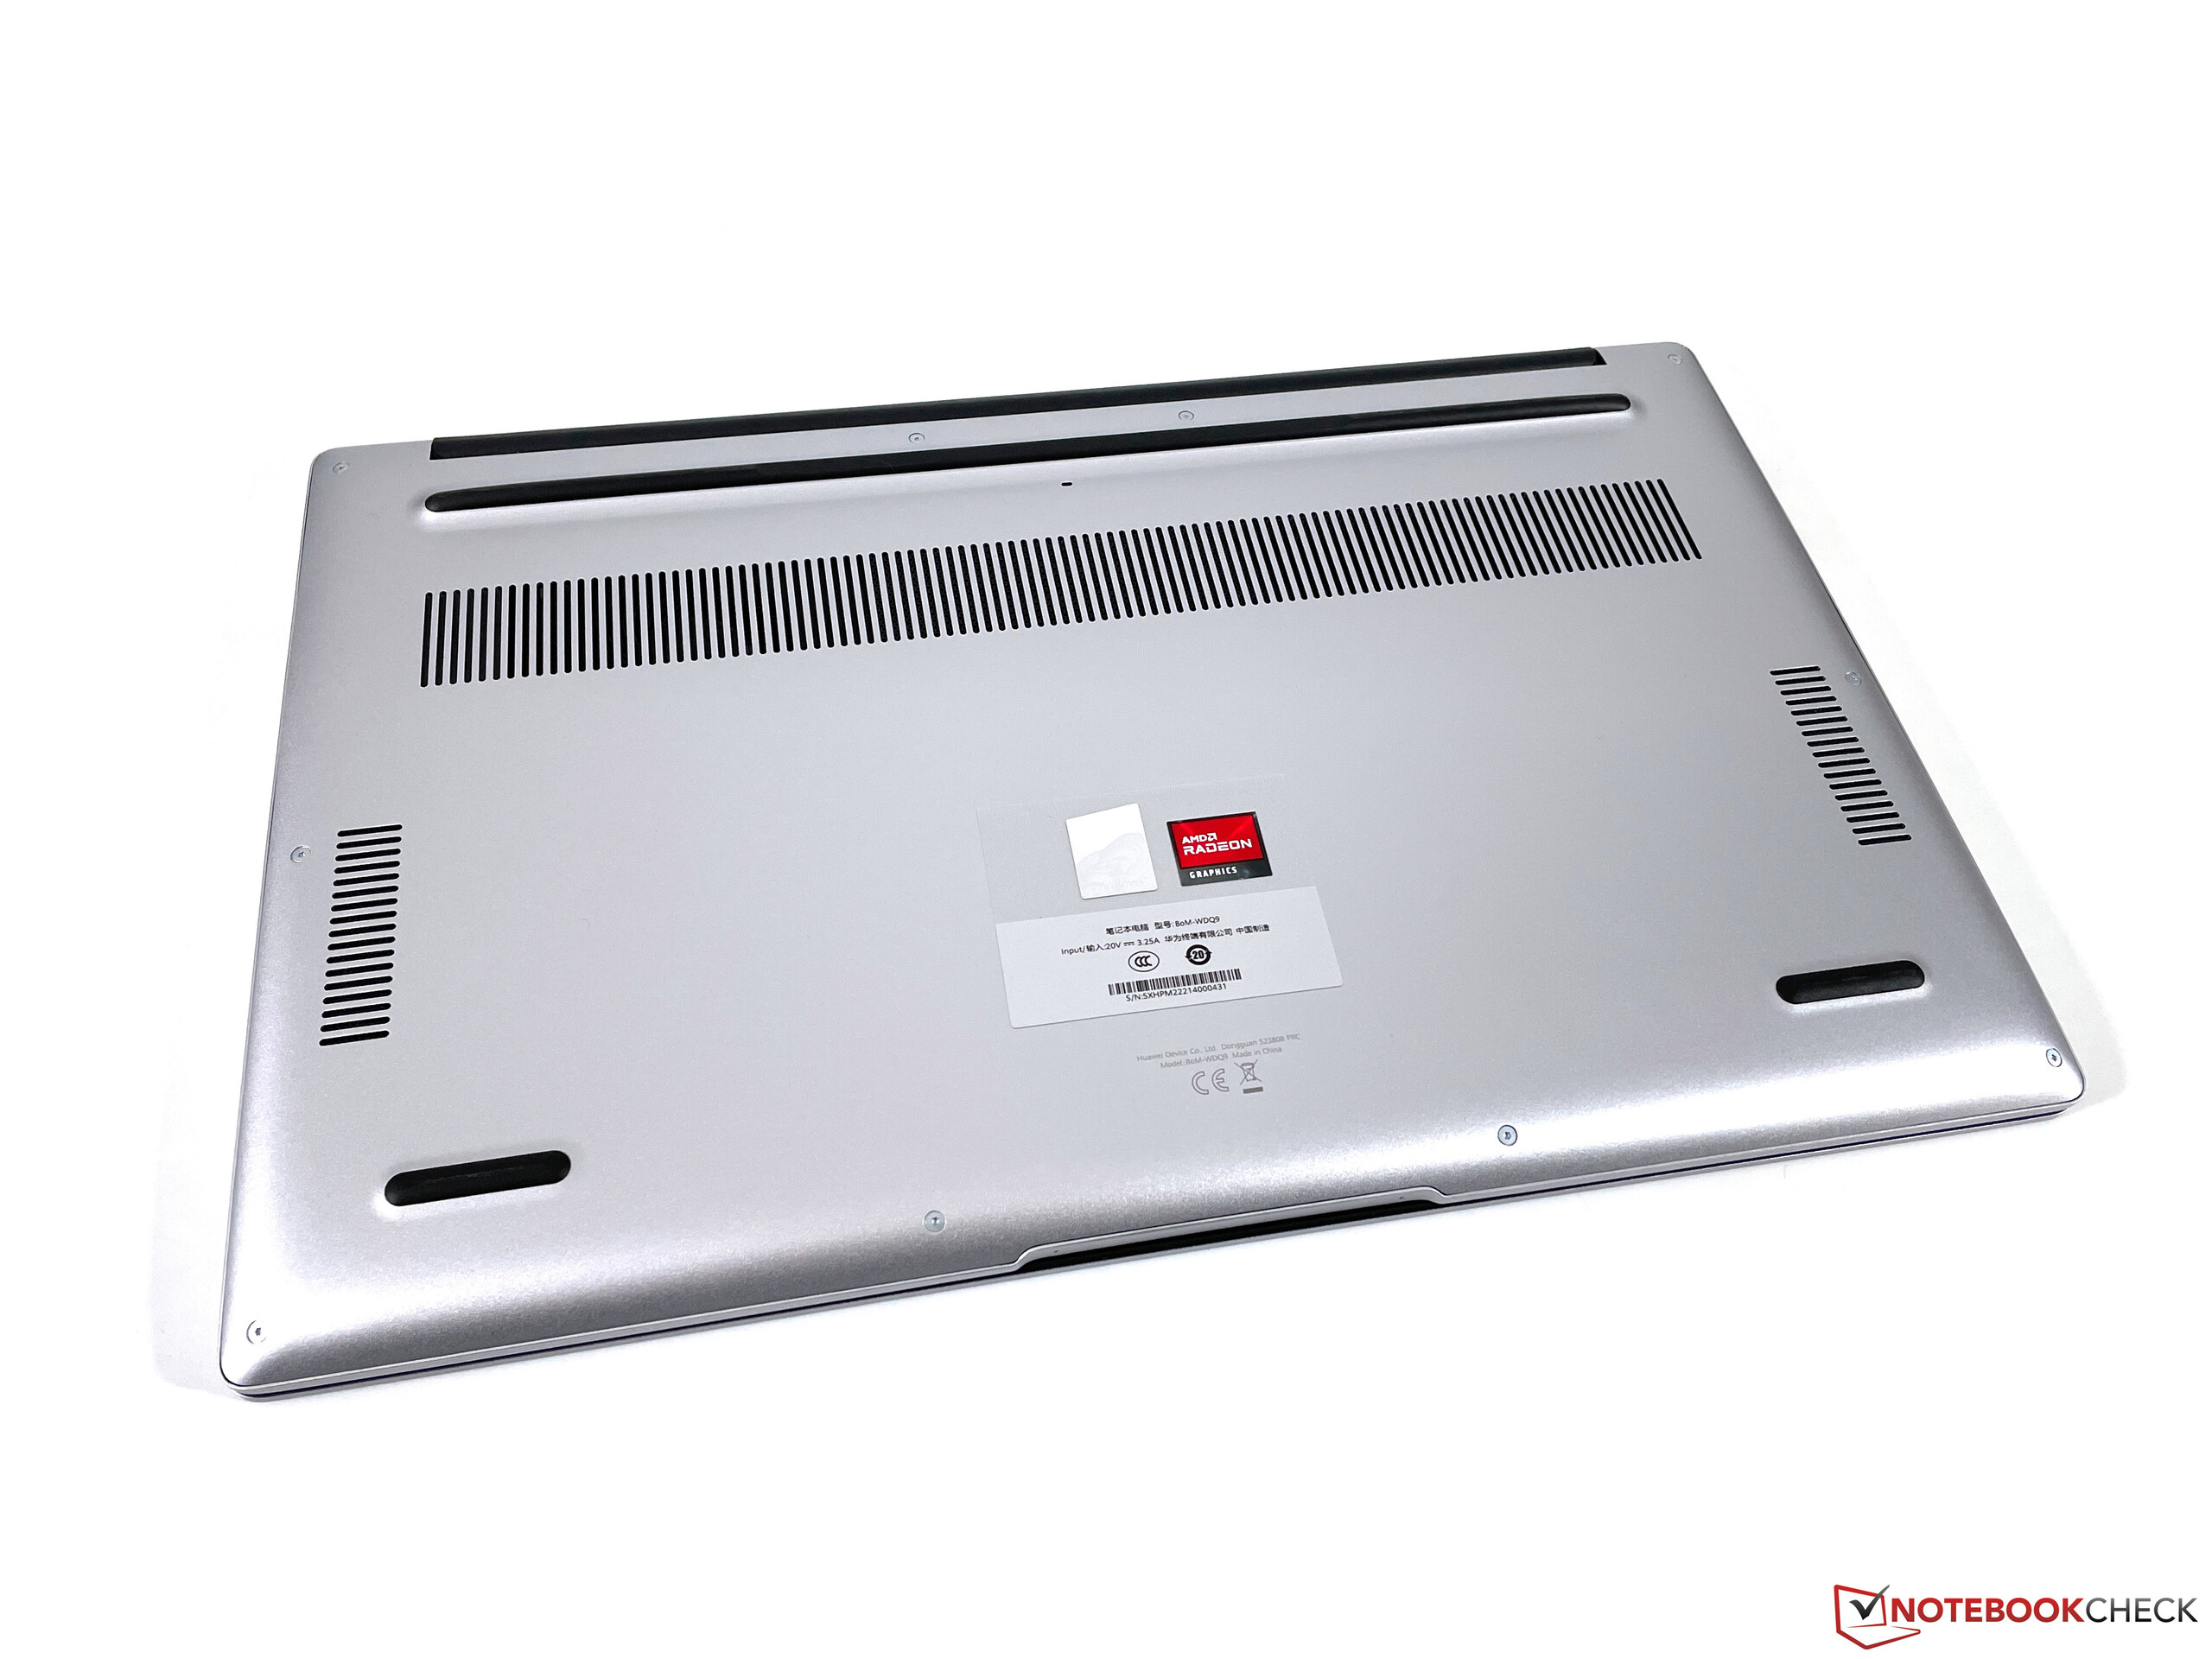 Huawei MateBook D 15 Ryzen 5 5500U -  External Reviews